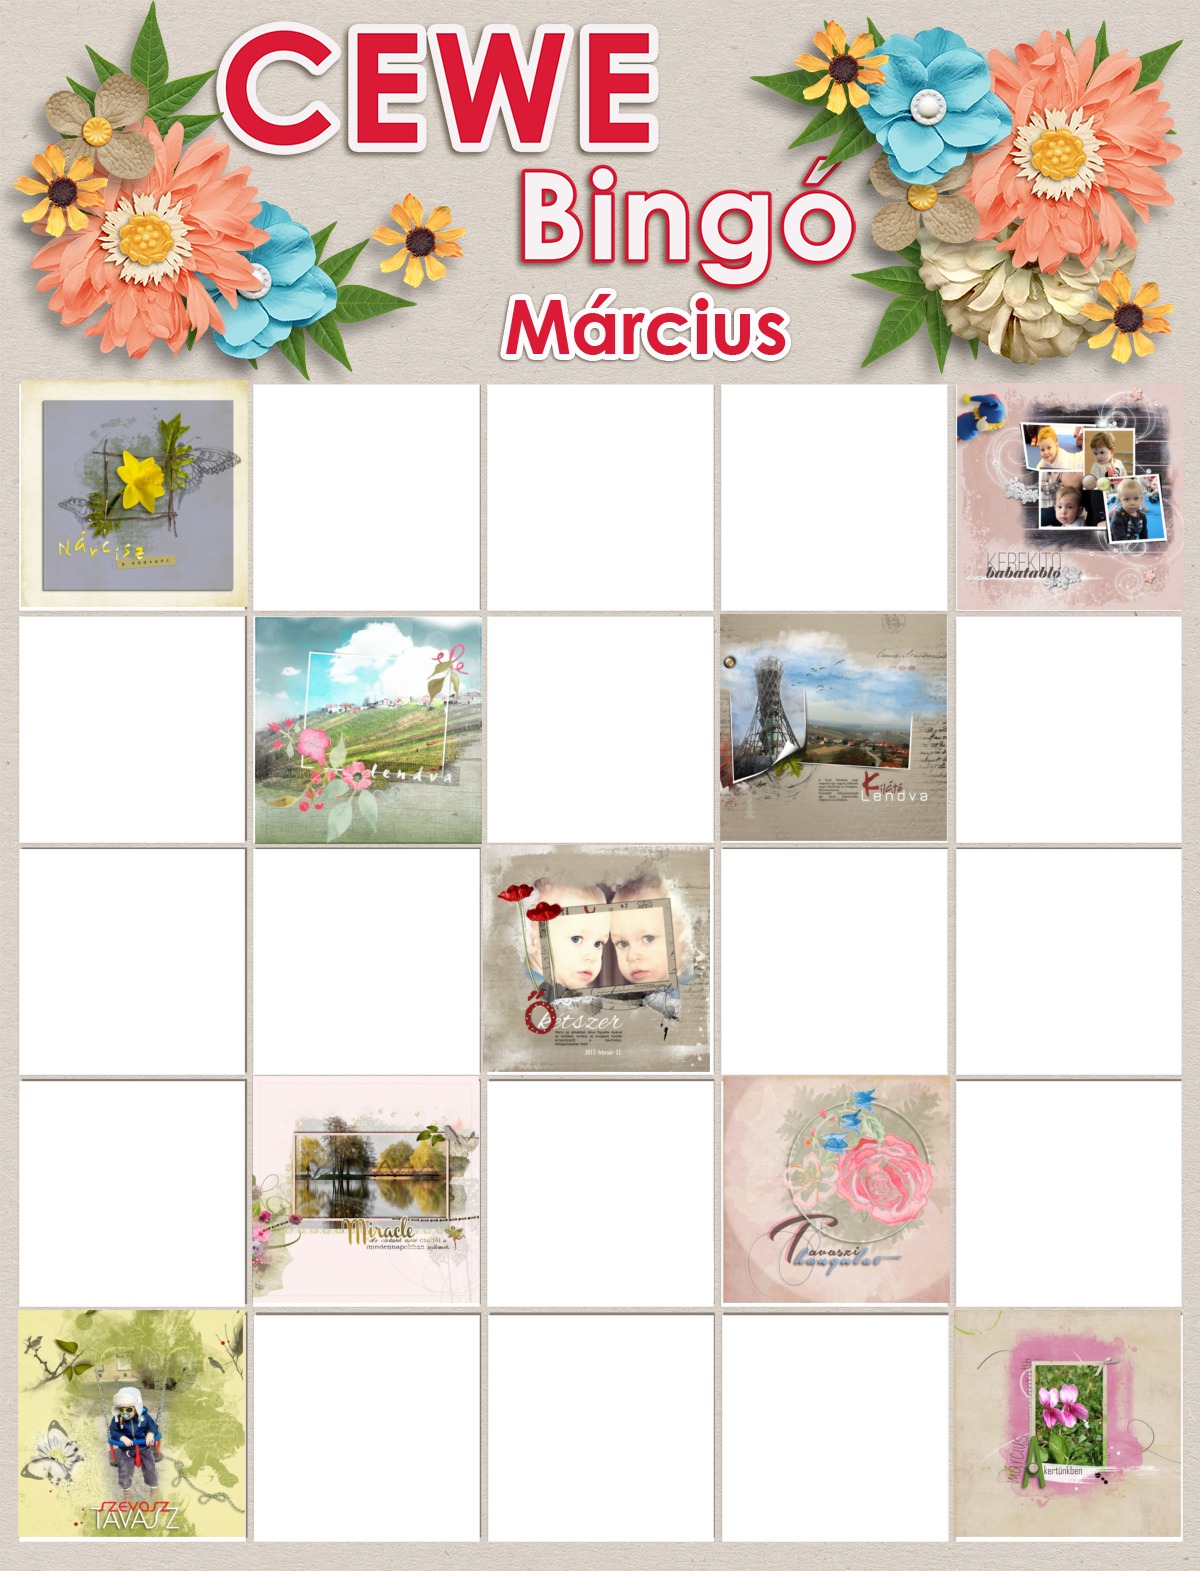 Bingo - 9